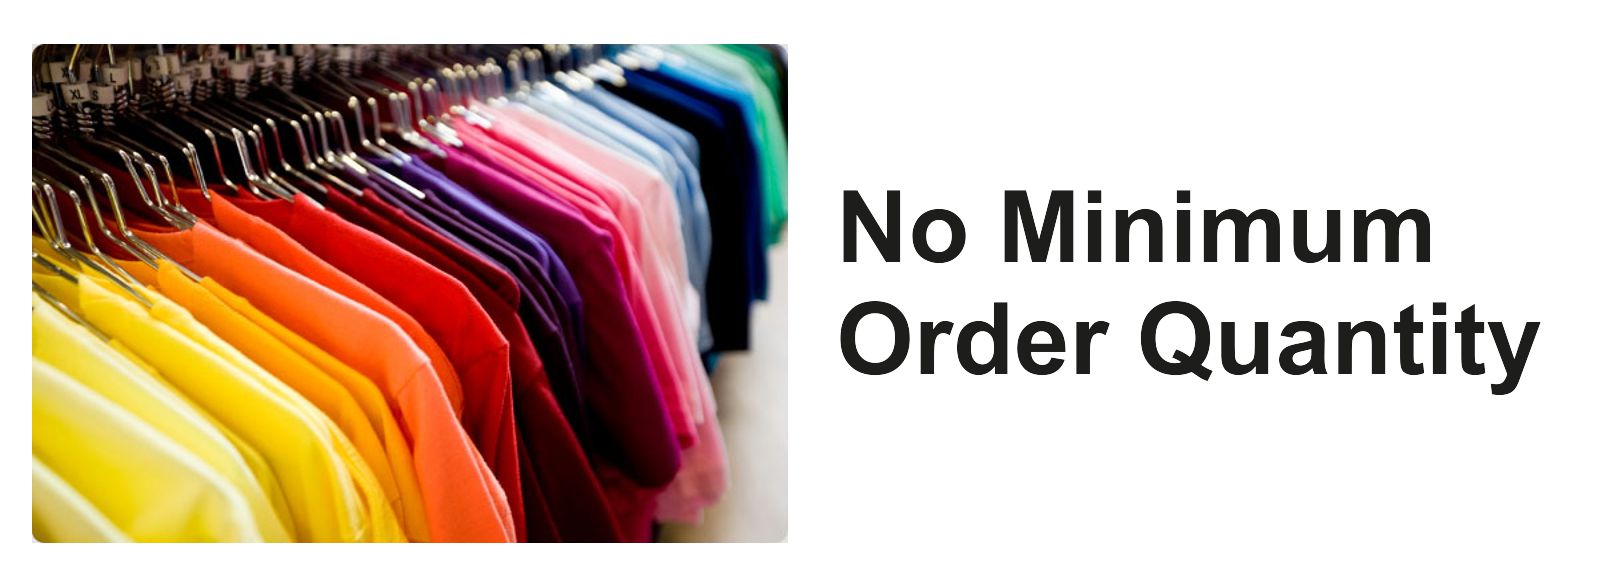 No minimum order quantity